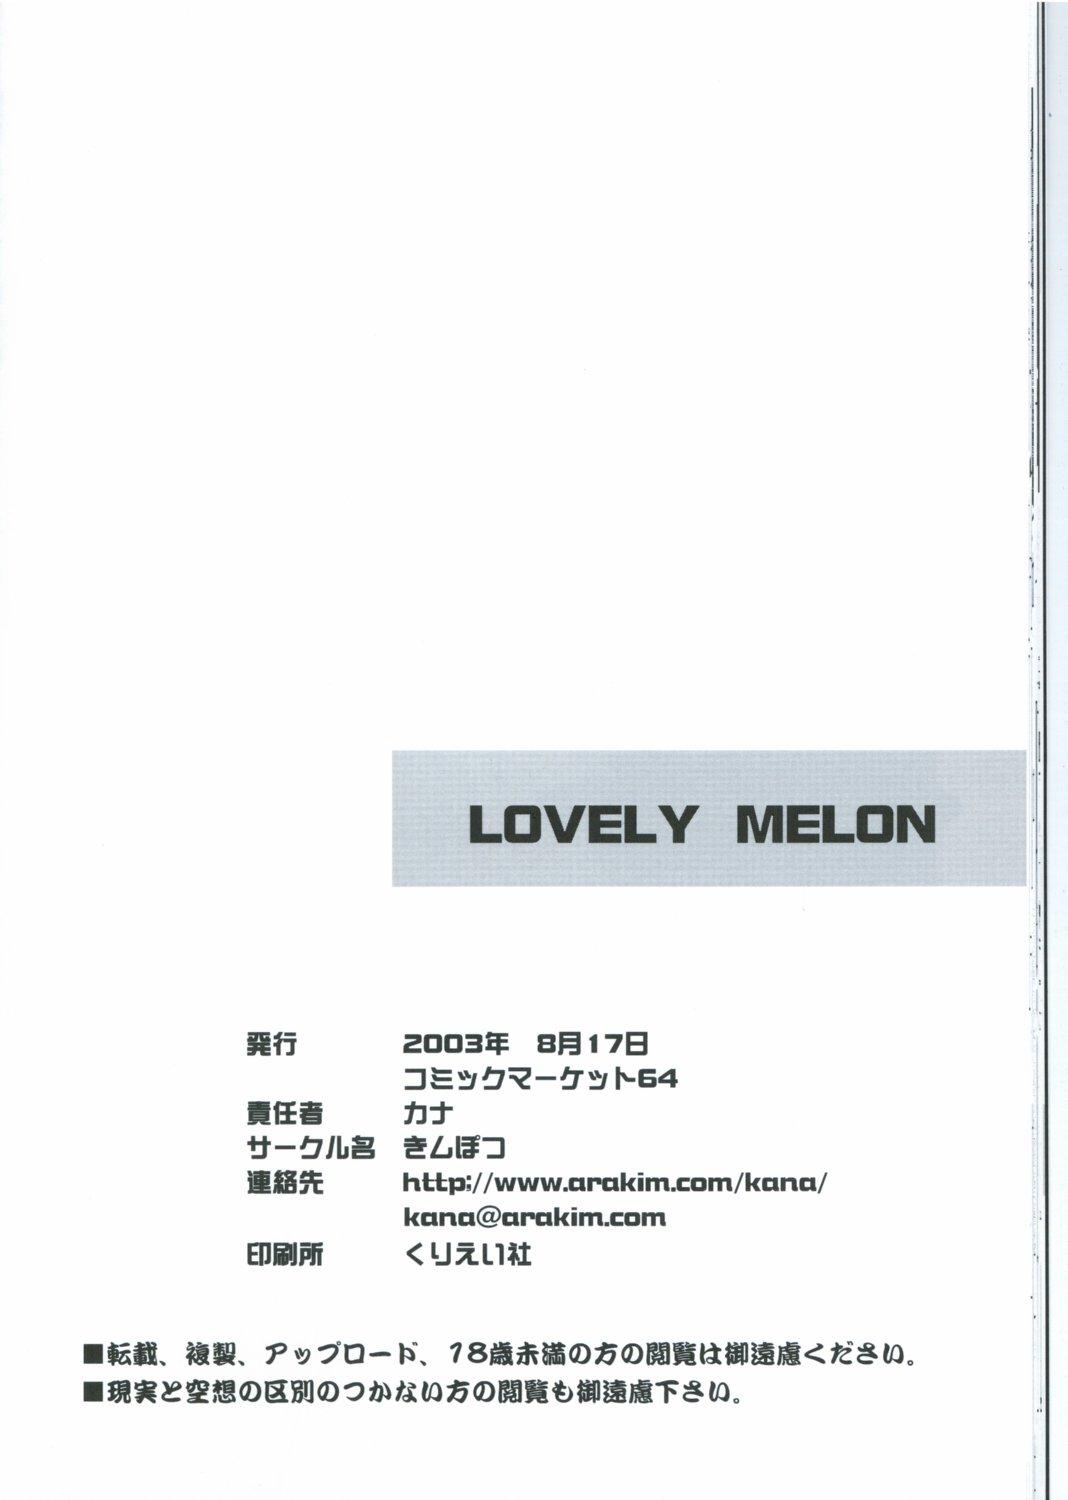 LOVELY MELON 24